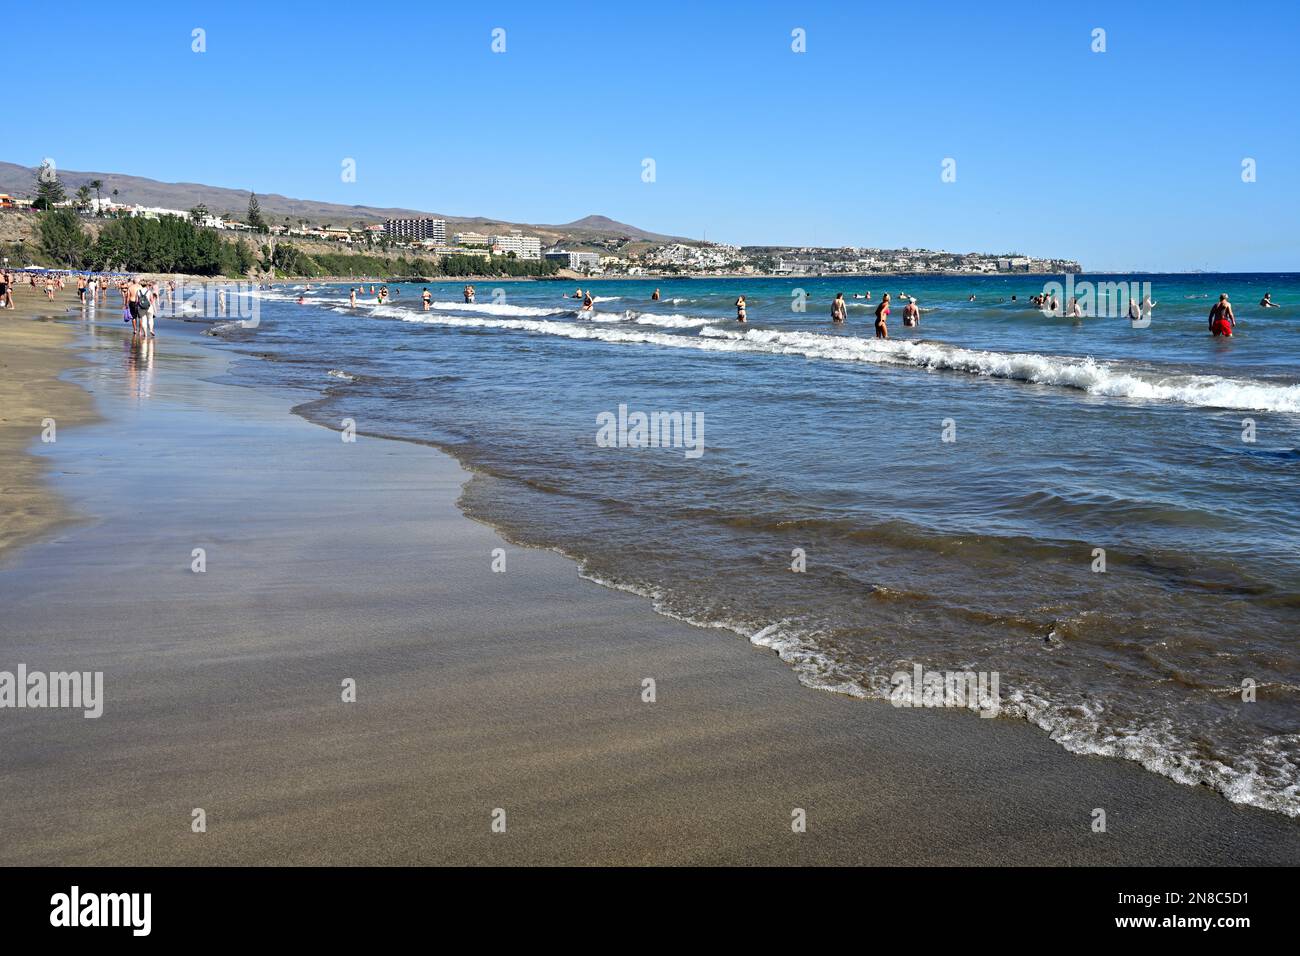 Am Sandstrand Playa del Inglés mit Menschen im Meer, Maspalomas, grenzt das Wasser an Stockfoto